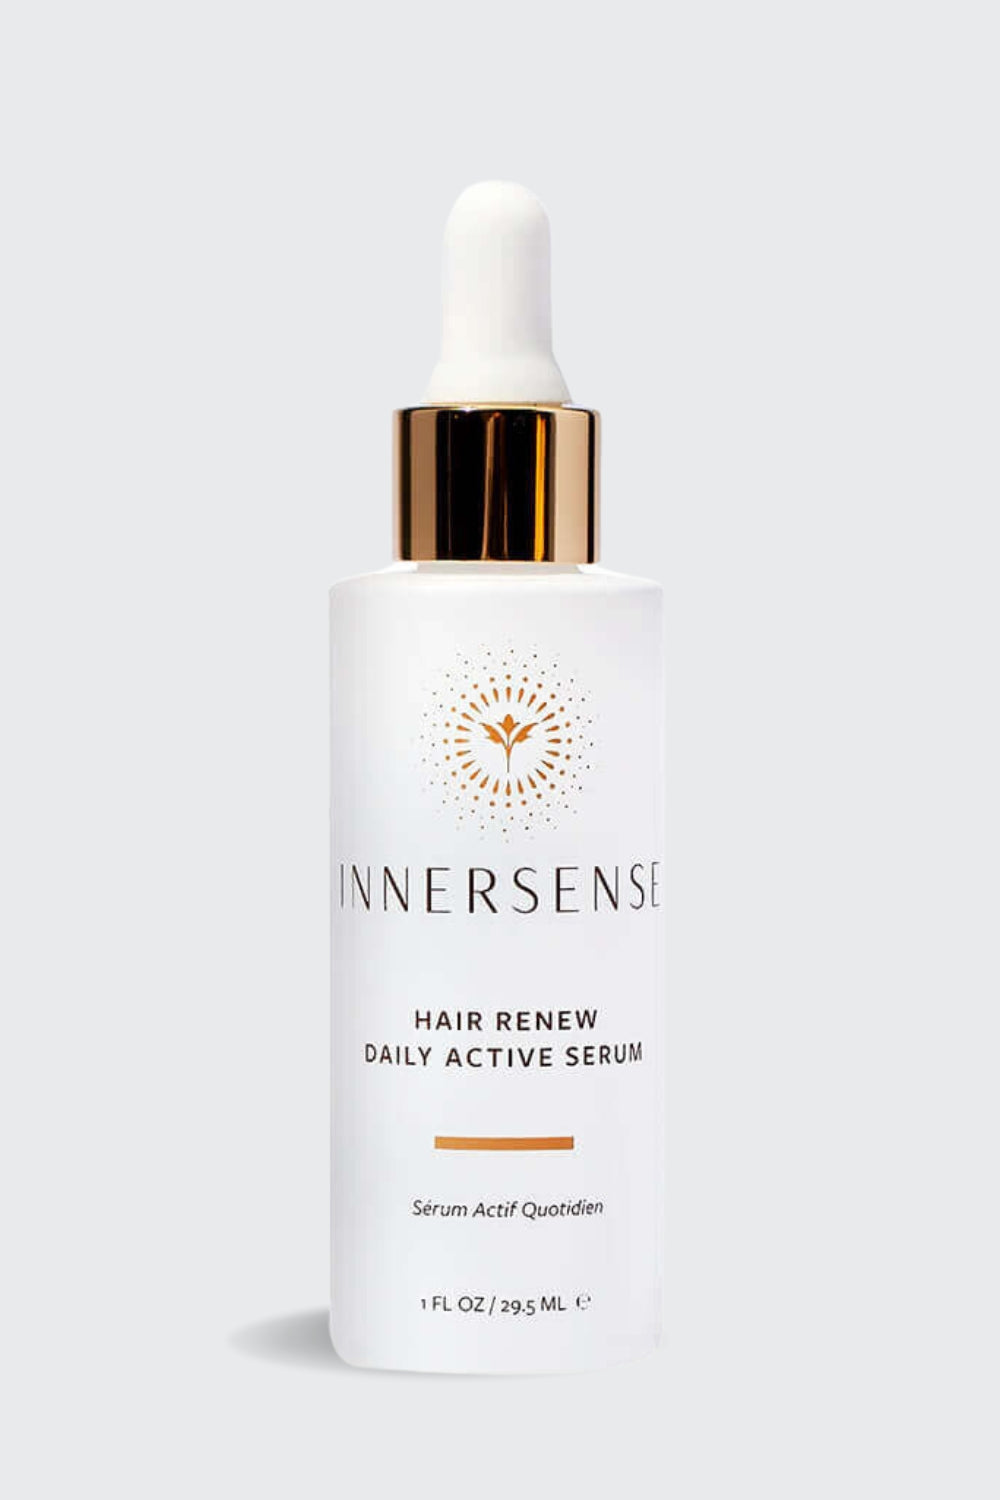 Innersense - Hair Renew Daily Active Serum - 29.5ml